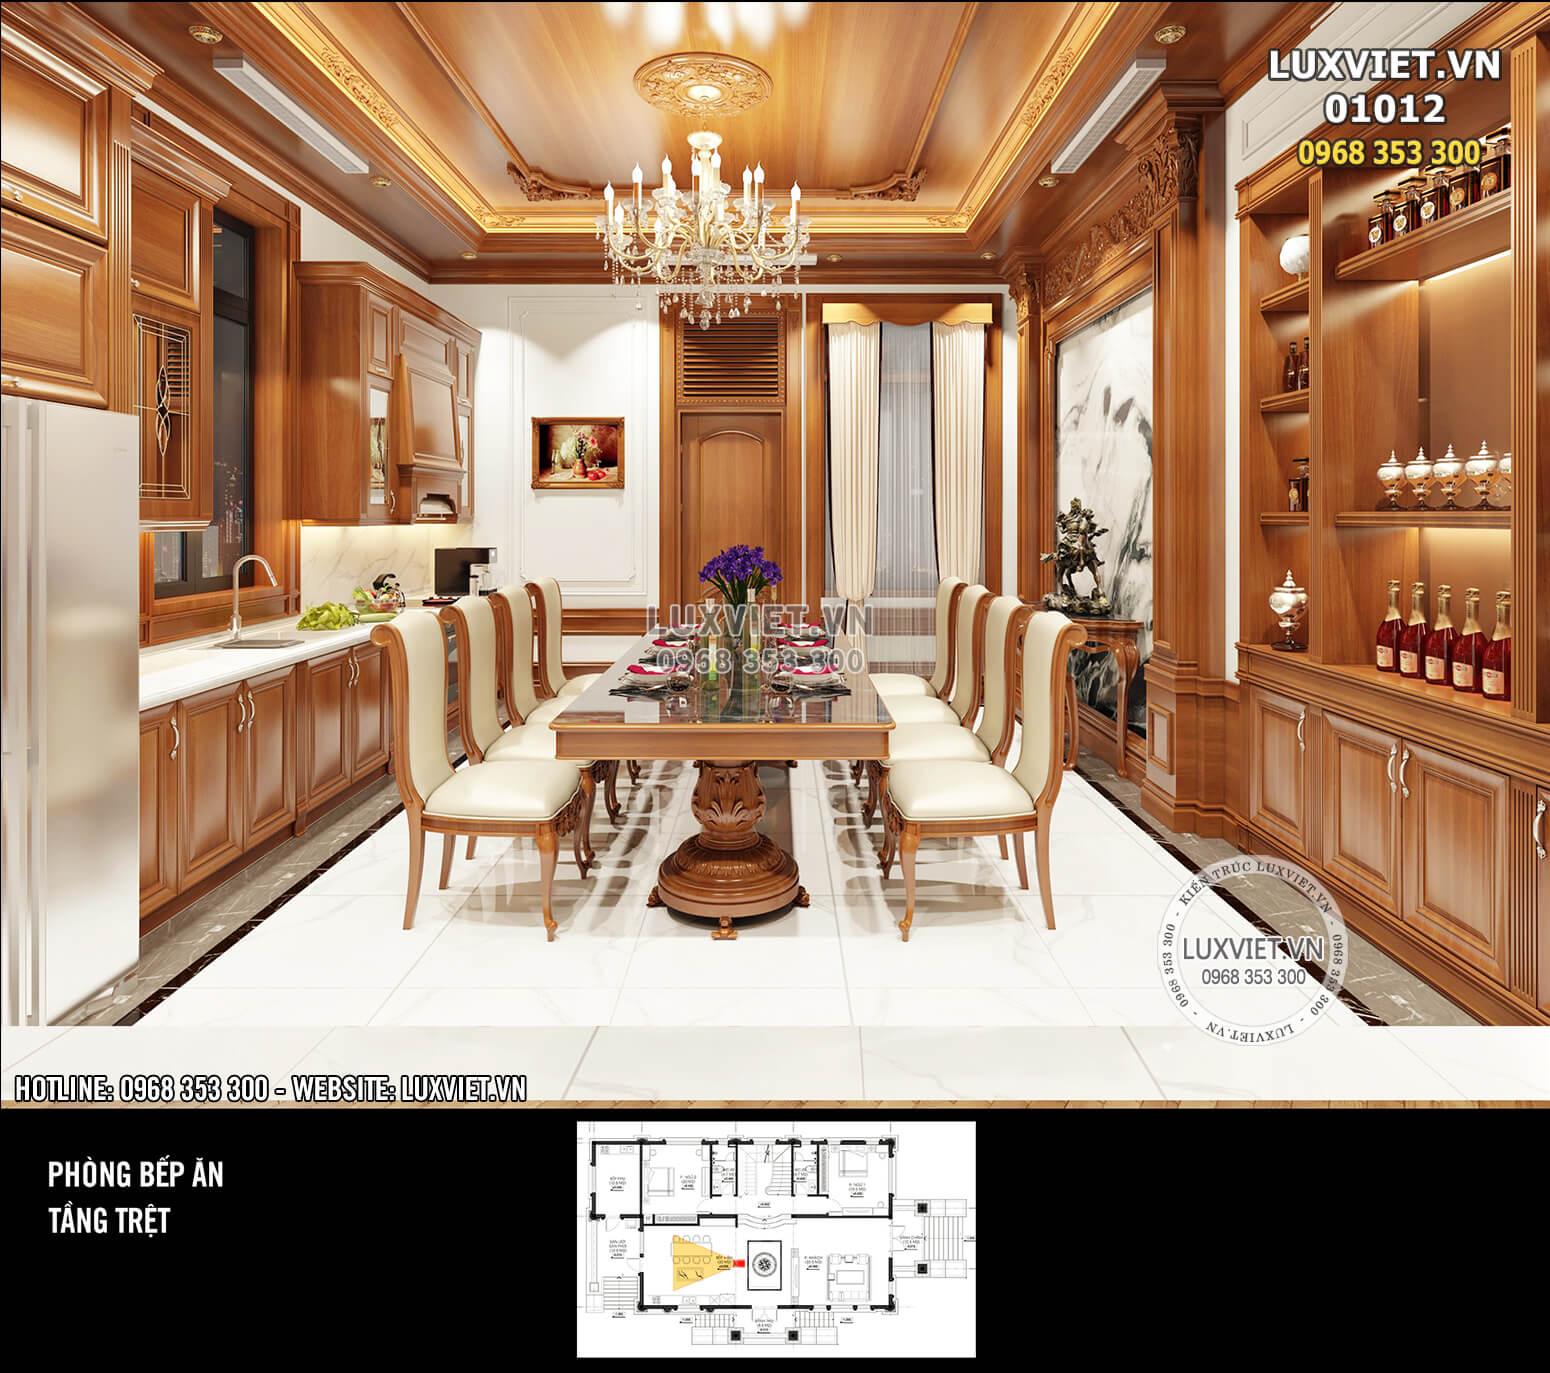 Hình ảnh: Không gian phòng bếp được thiết kế ngăn nắp với sự tính toán tỉ mỉ của các KTS